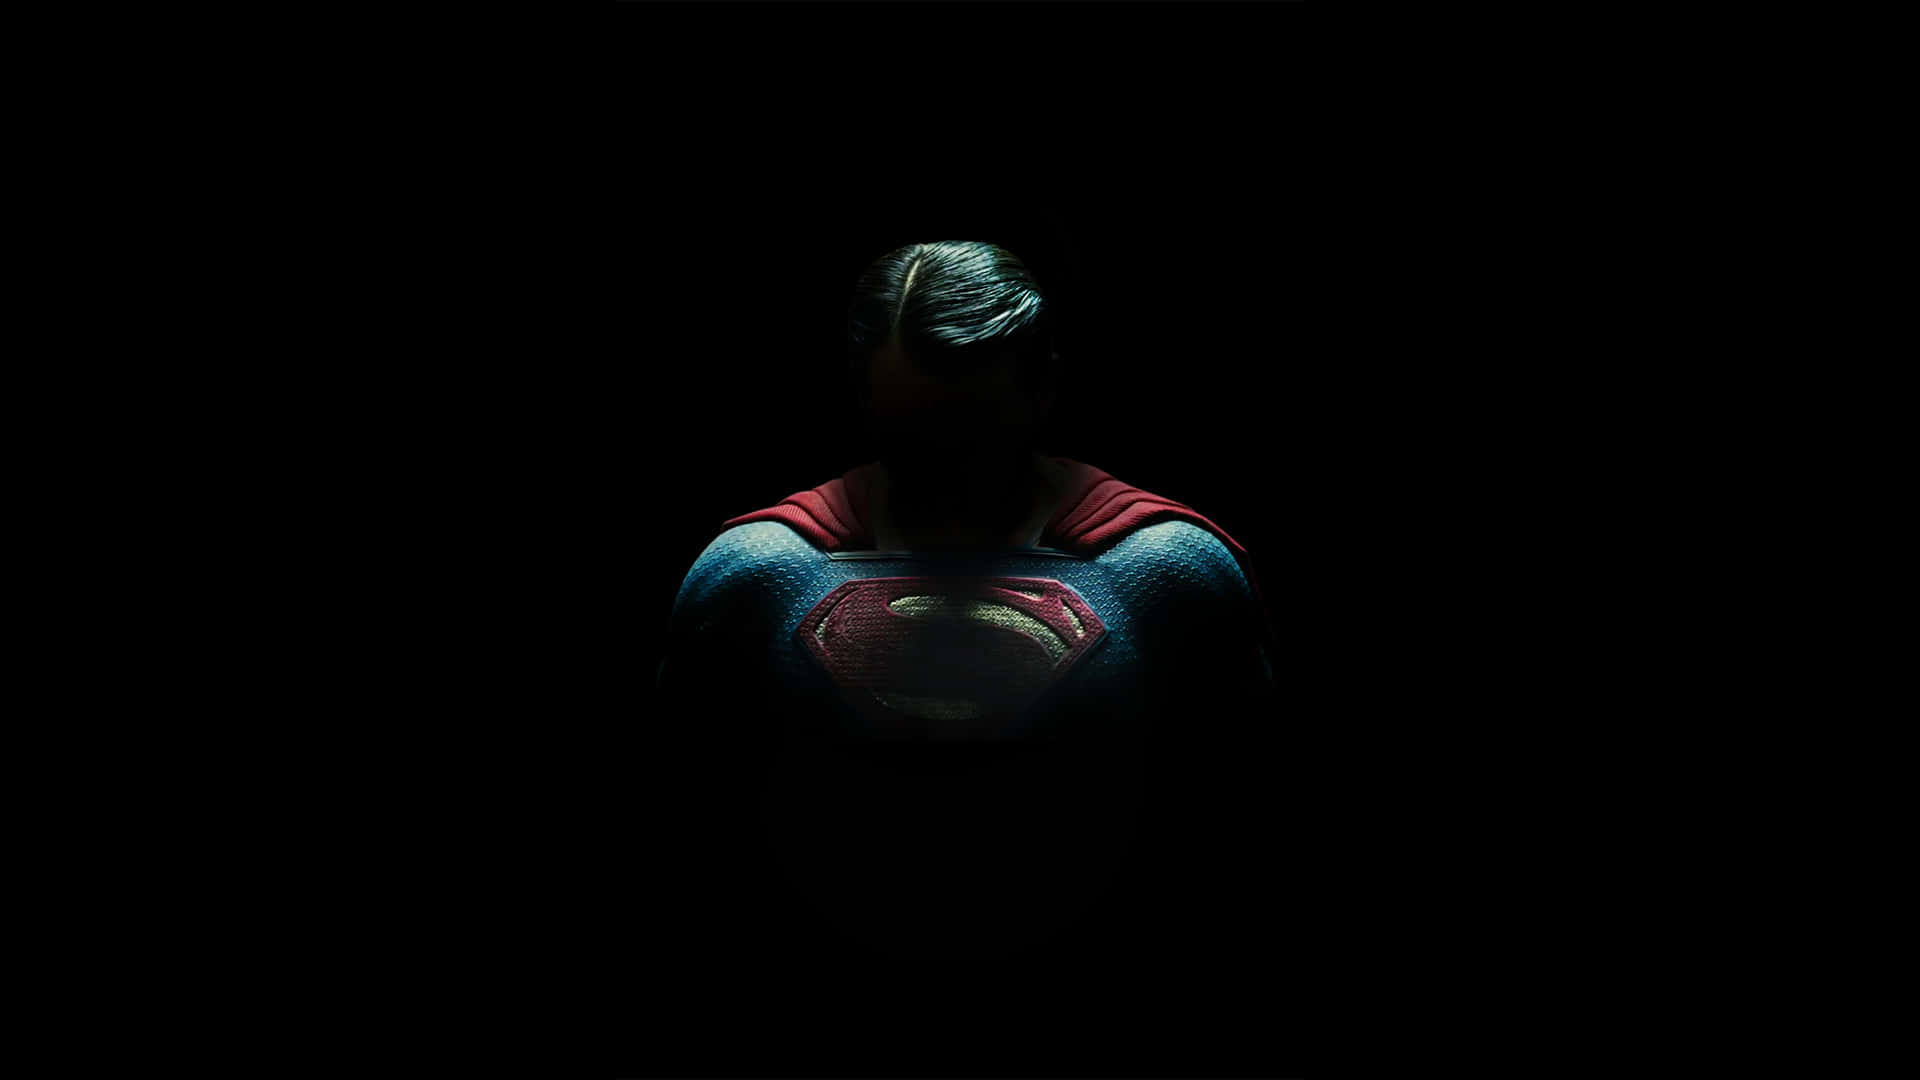 Supermanin Der Dunkelheit Mit Seinem Umhang. Wallpaper